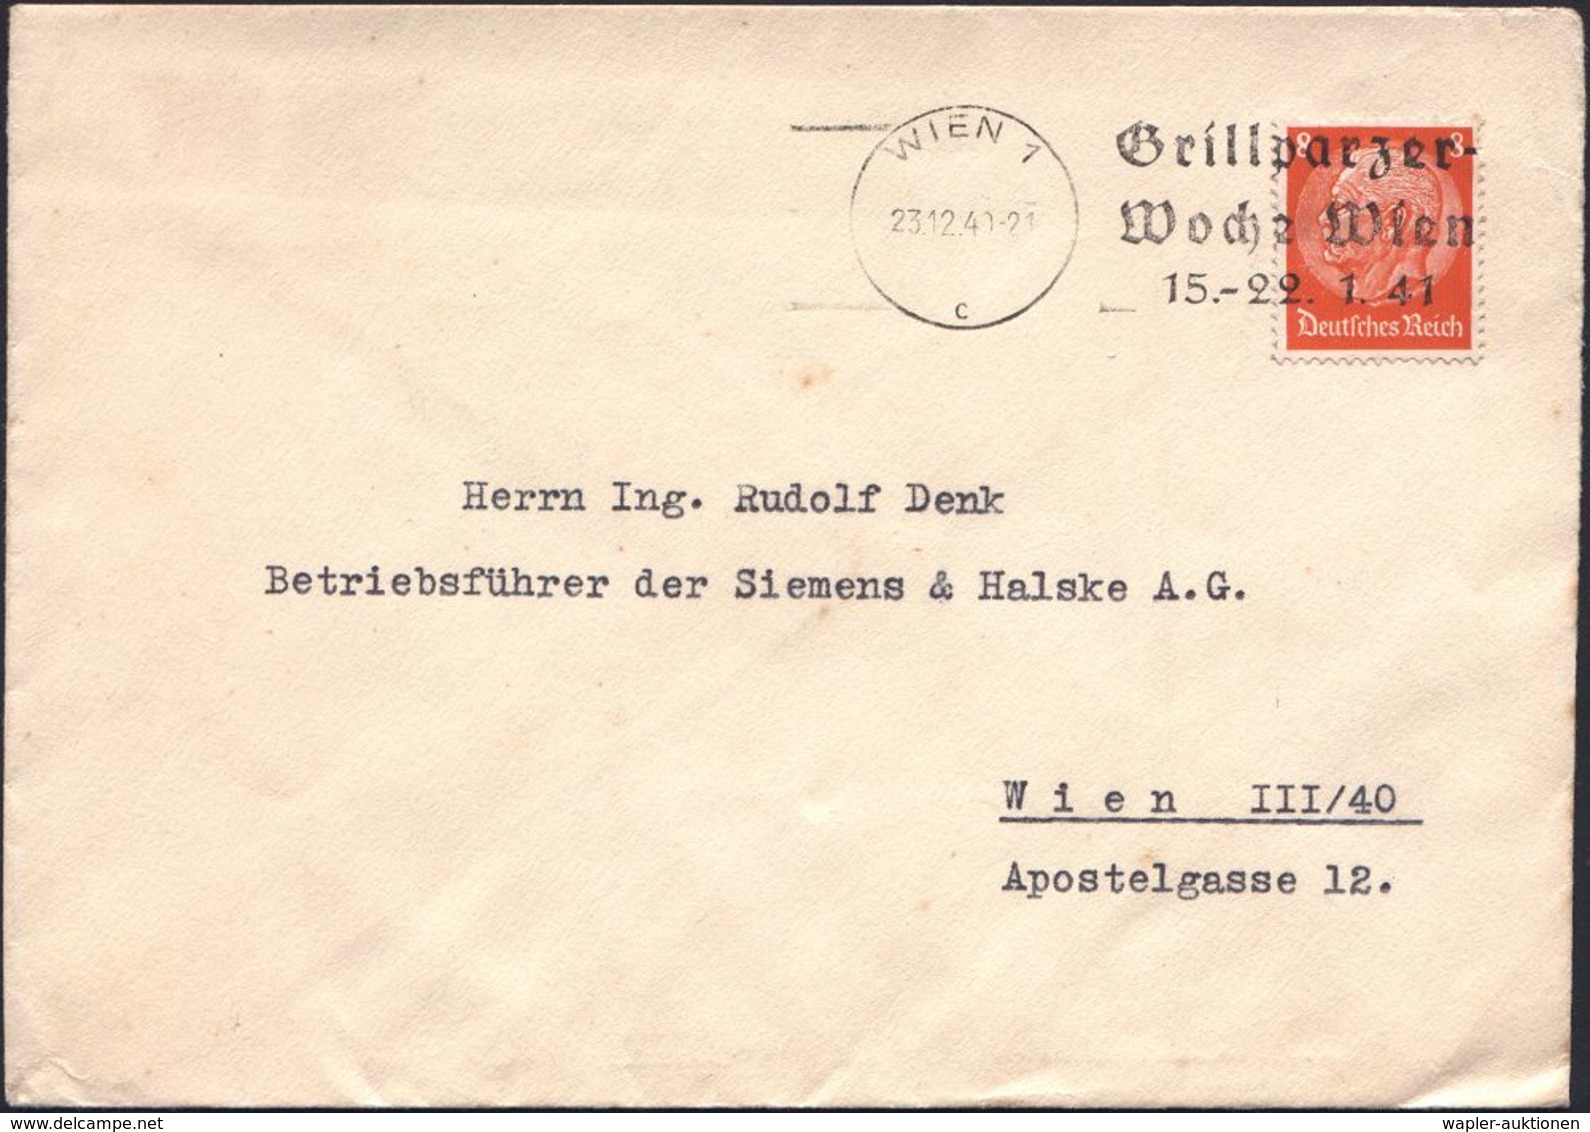 DEUTSCHSPRACHIGE DICHTER & LITERATUR : WIEN 1/ C/ Grillparzer-/ Woche Wien/ 15.-22.1.41 1941 (23.12.) Seltener MWSt, öst - Schriftsteller